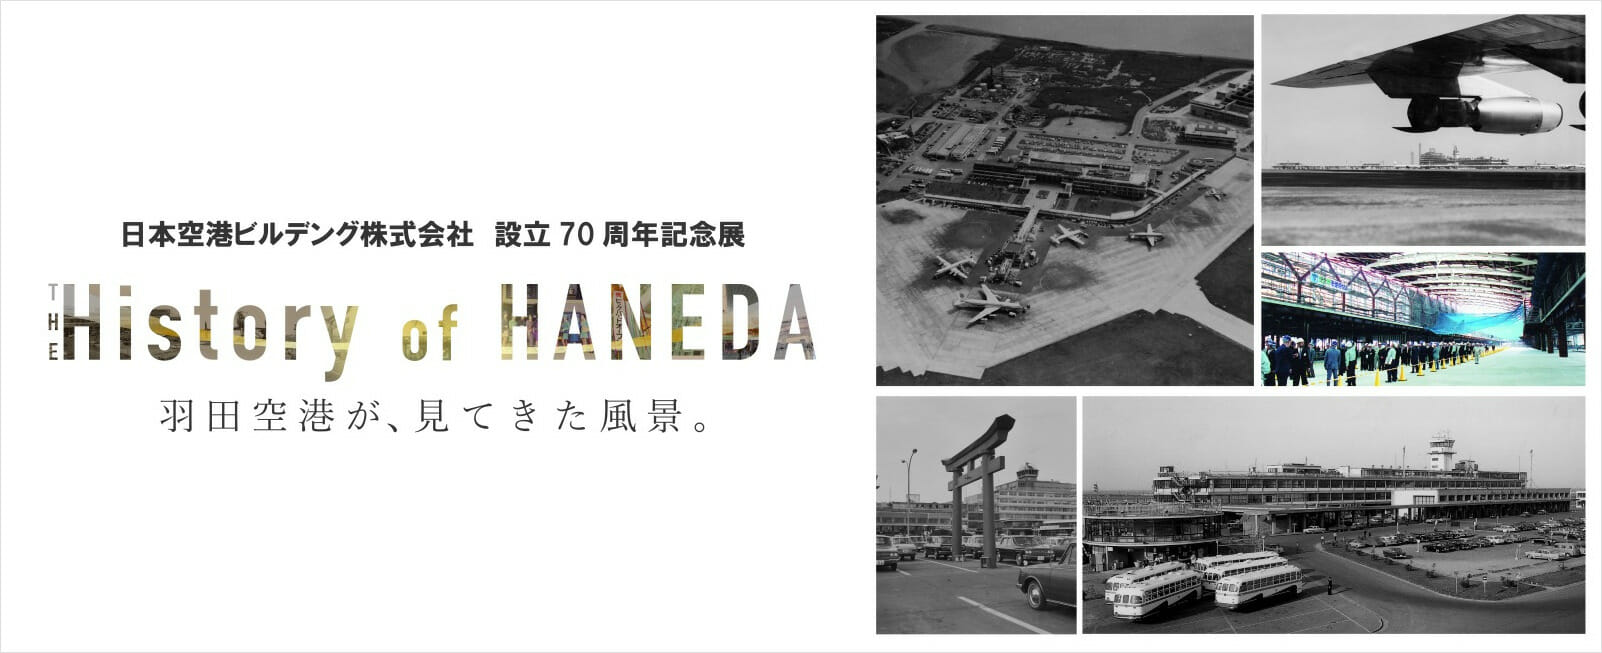 羽田空港の歴史的瞬間が蘇る、日本空港ビルデング設立70周年記念展が8月31日まで開催